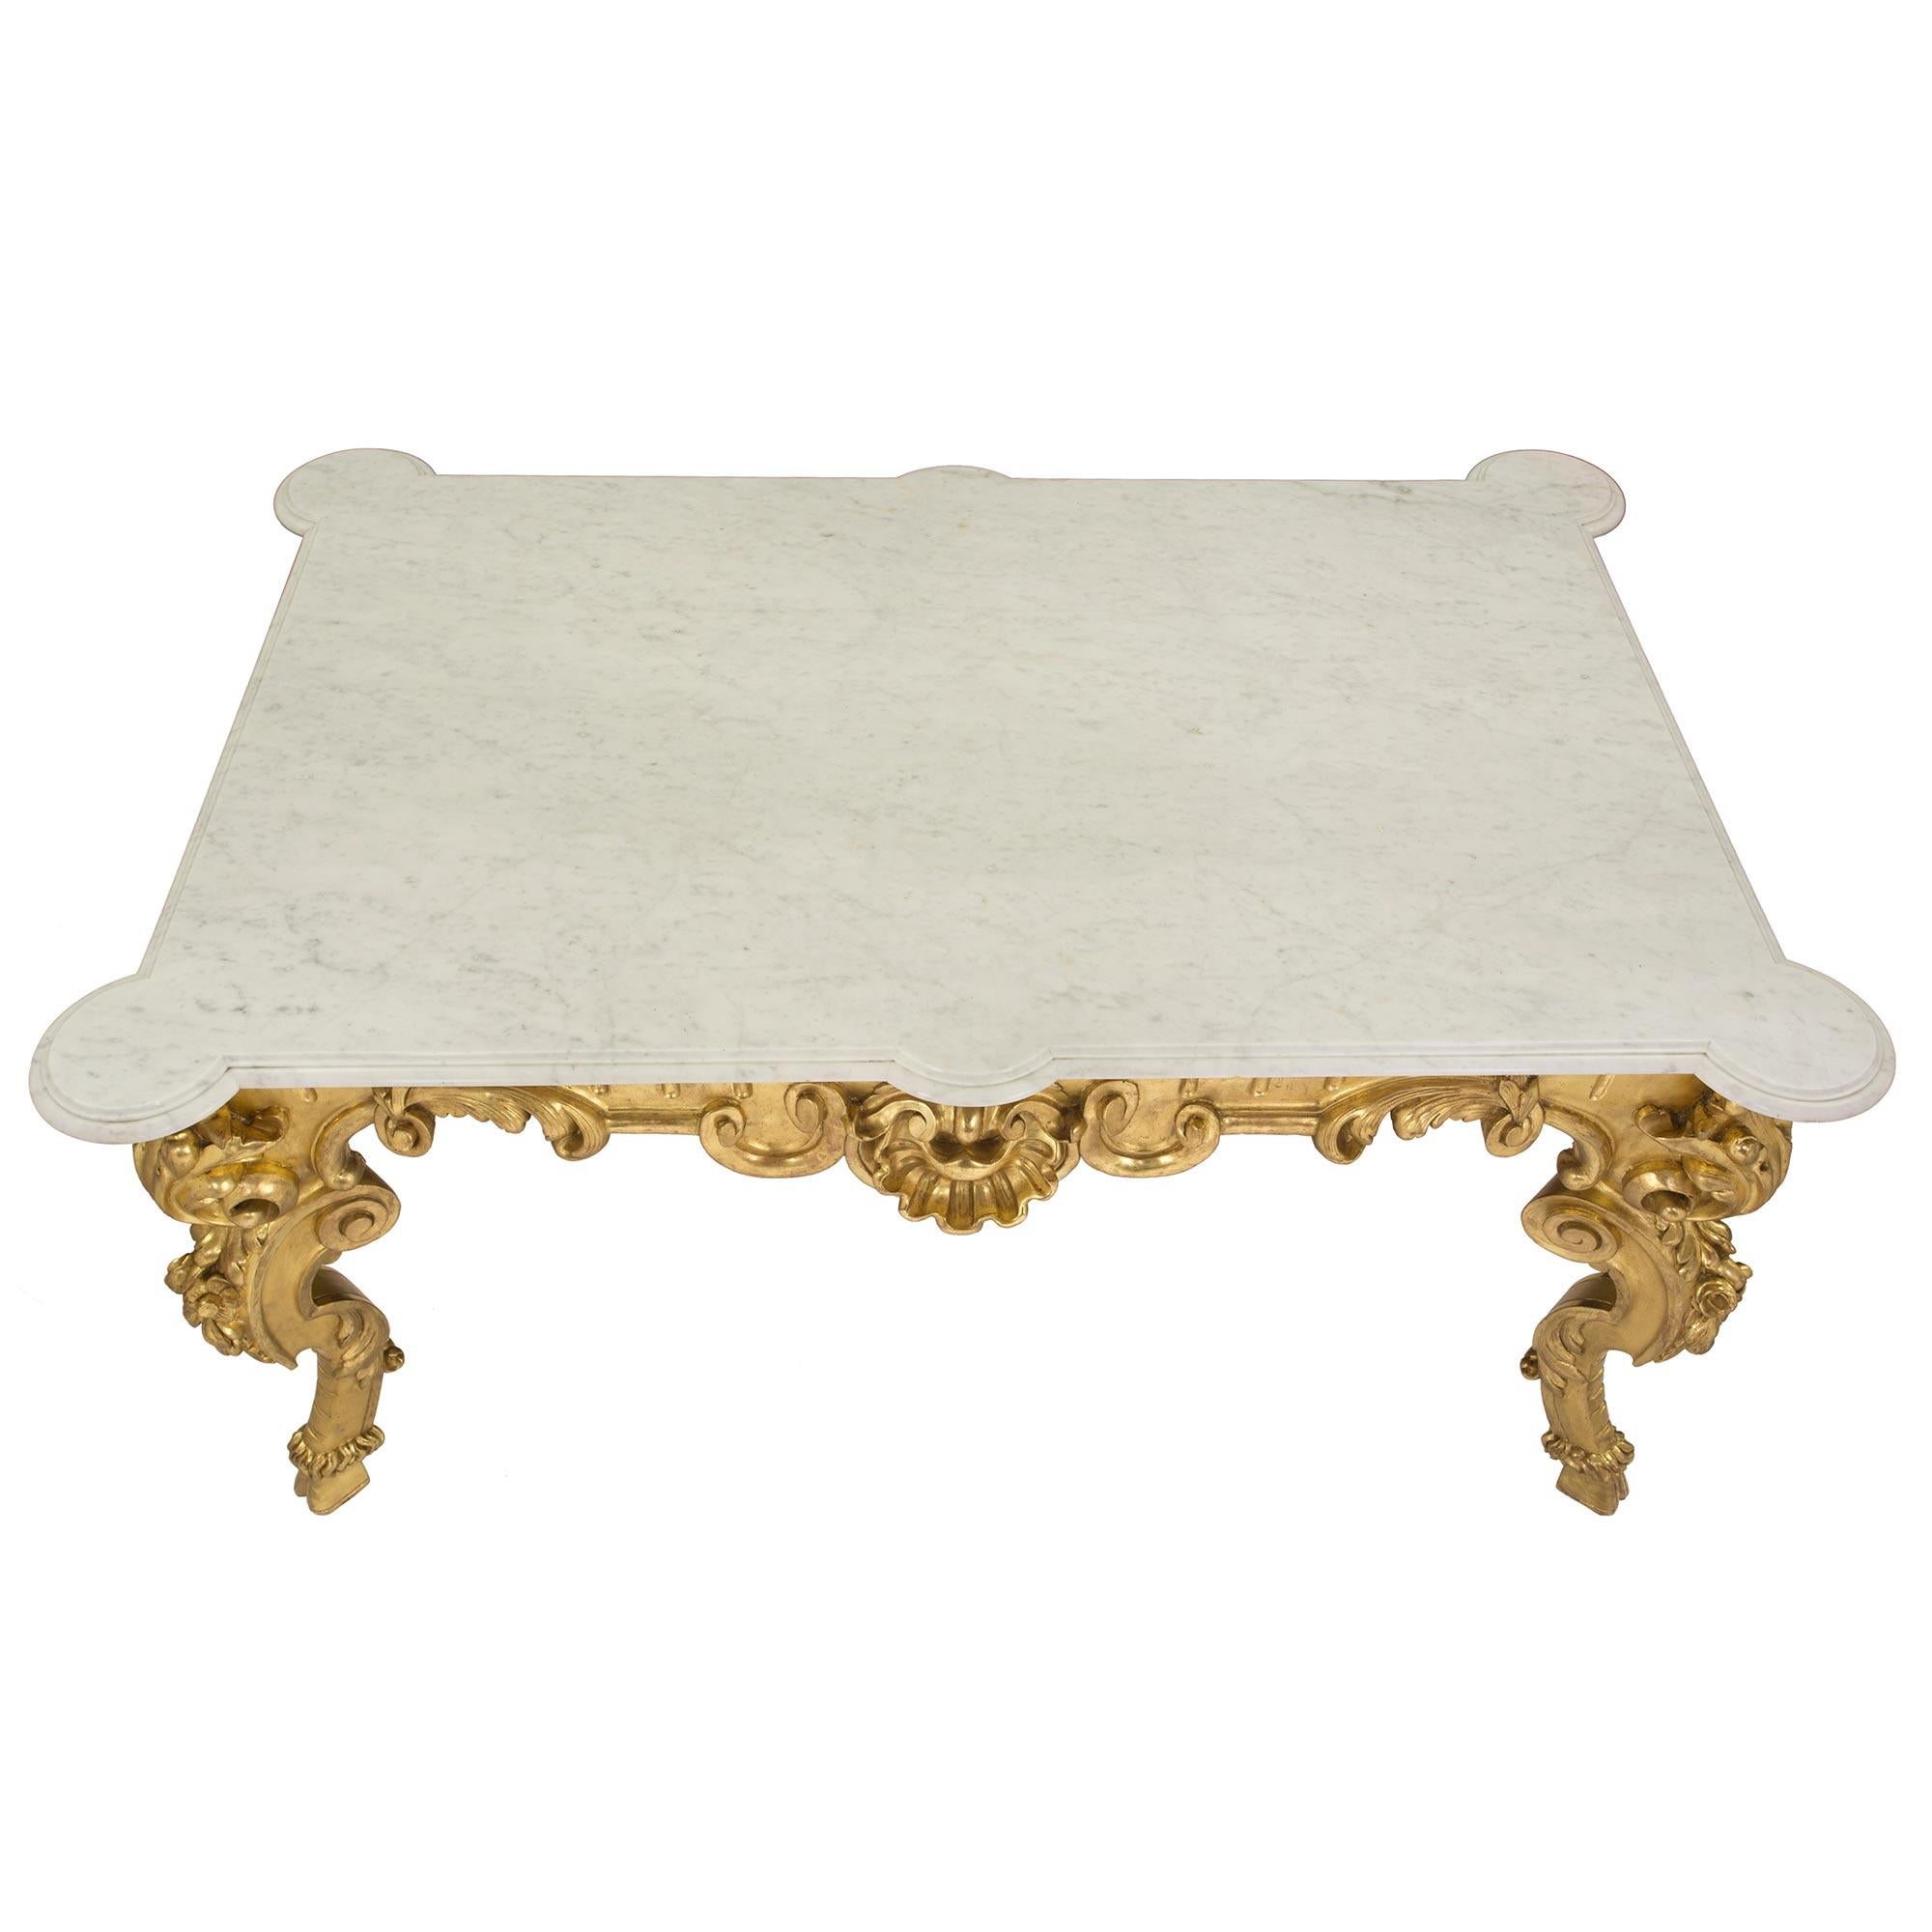 Eine sehr wichtige und große italienische Anfang des 19. Jahrhunderts Louis XV st. Vergoldung Mitte Tisch. Der rechteckige Tisch steht auf vier S-förmig geschwungenen Beinen mit eindrucksvollen und reich geschnitzten Akanthusblättern über kühnen